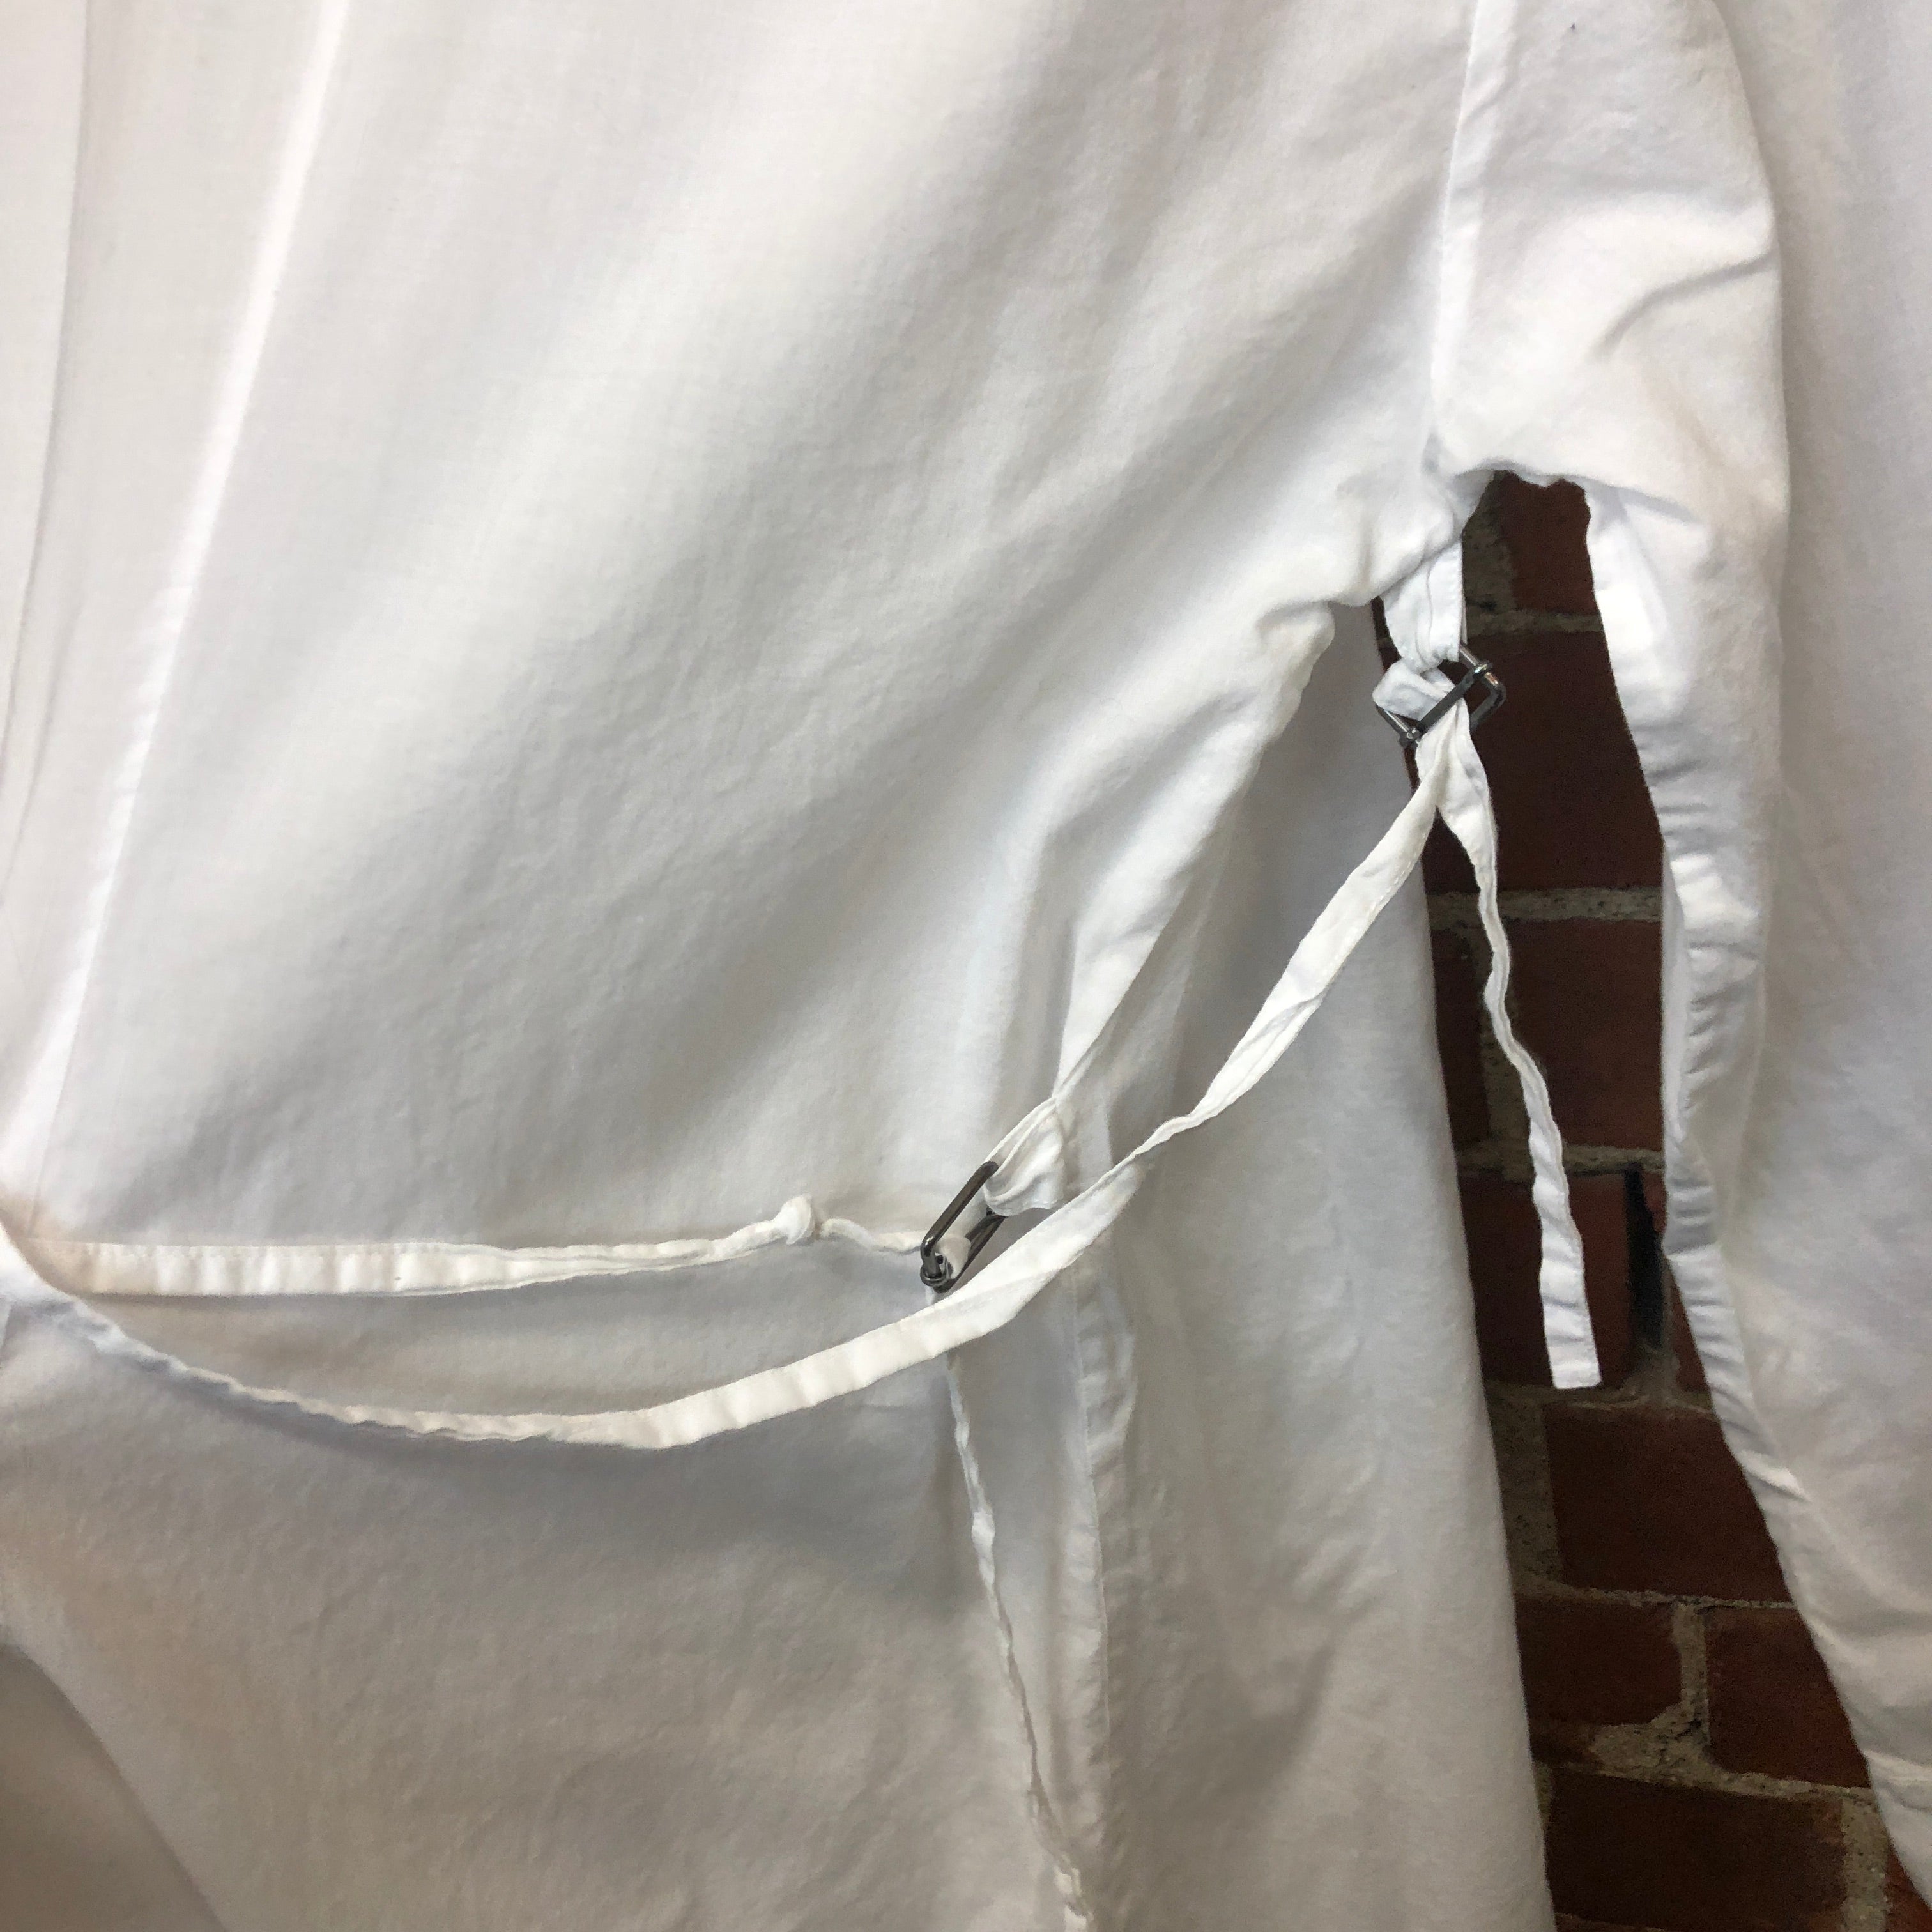 ANN DEMEULEMEESTER cotton shirt jacket